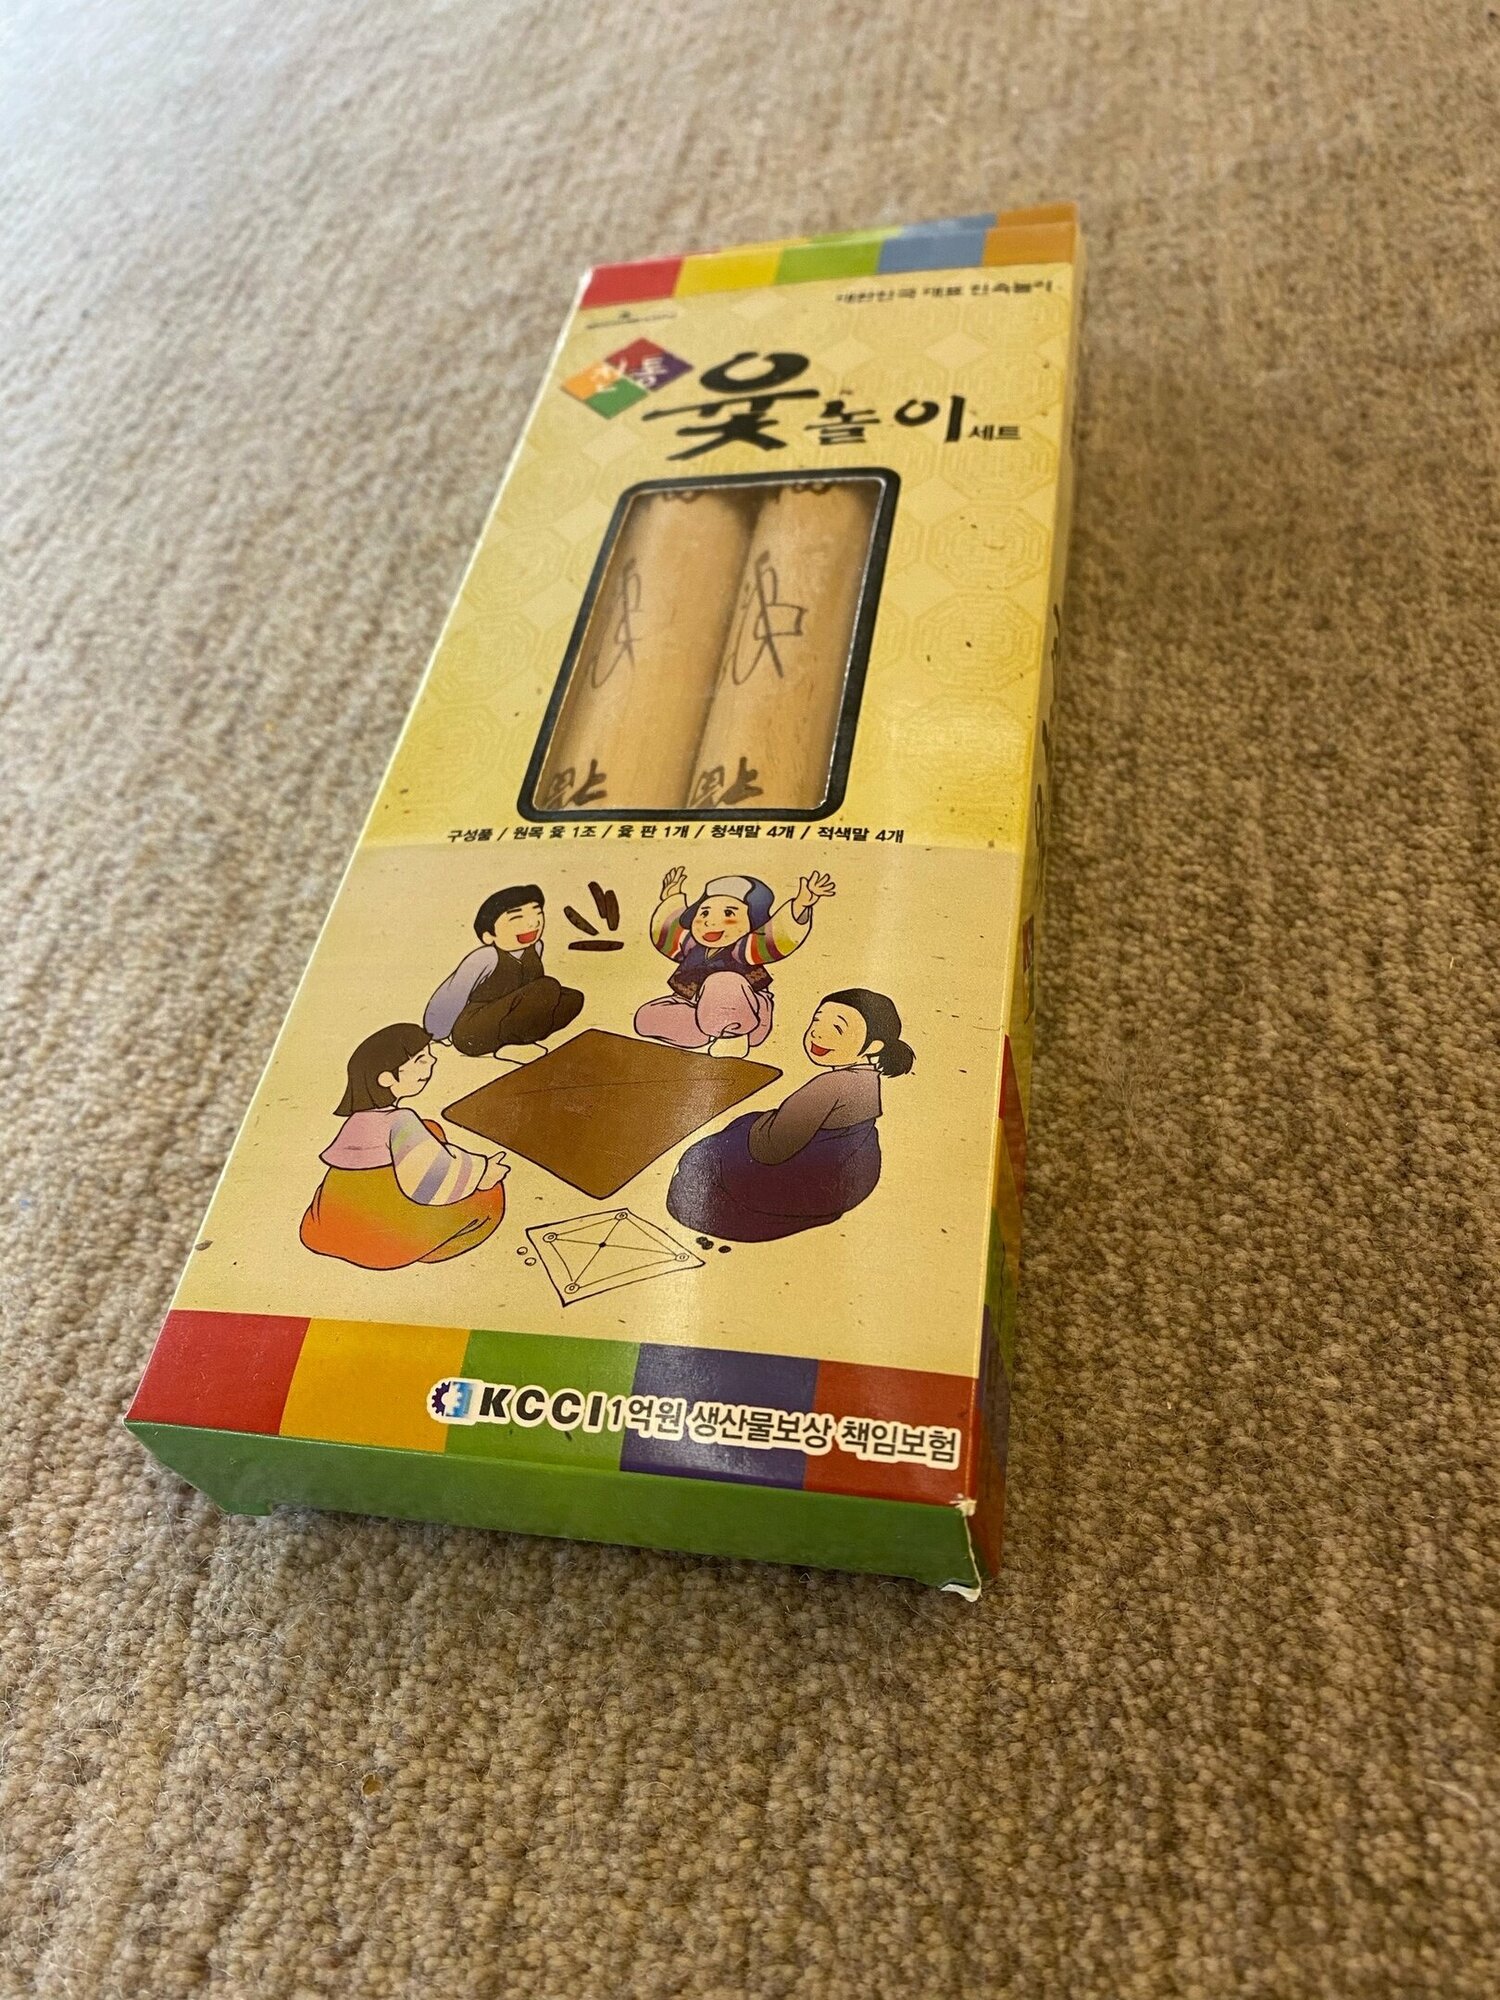 Настольная корейская игра " Ютнори ", поле, фишки, палочки и кубики.